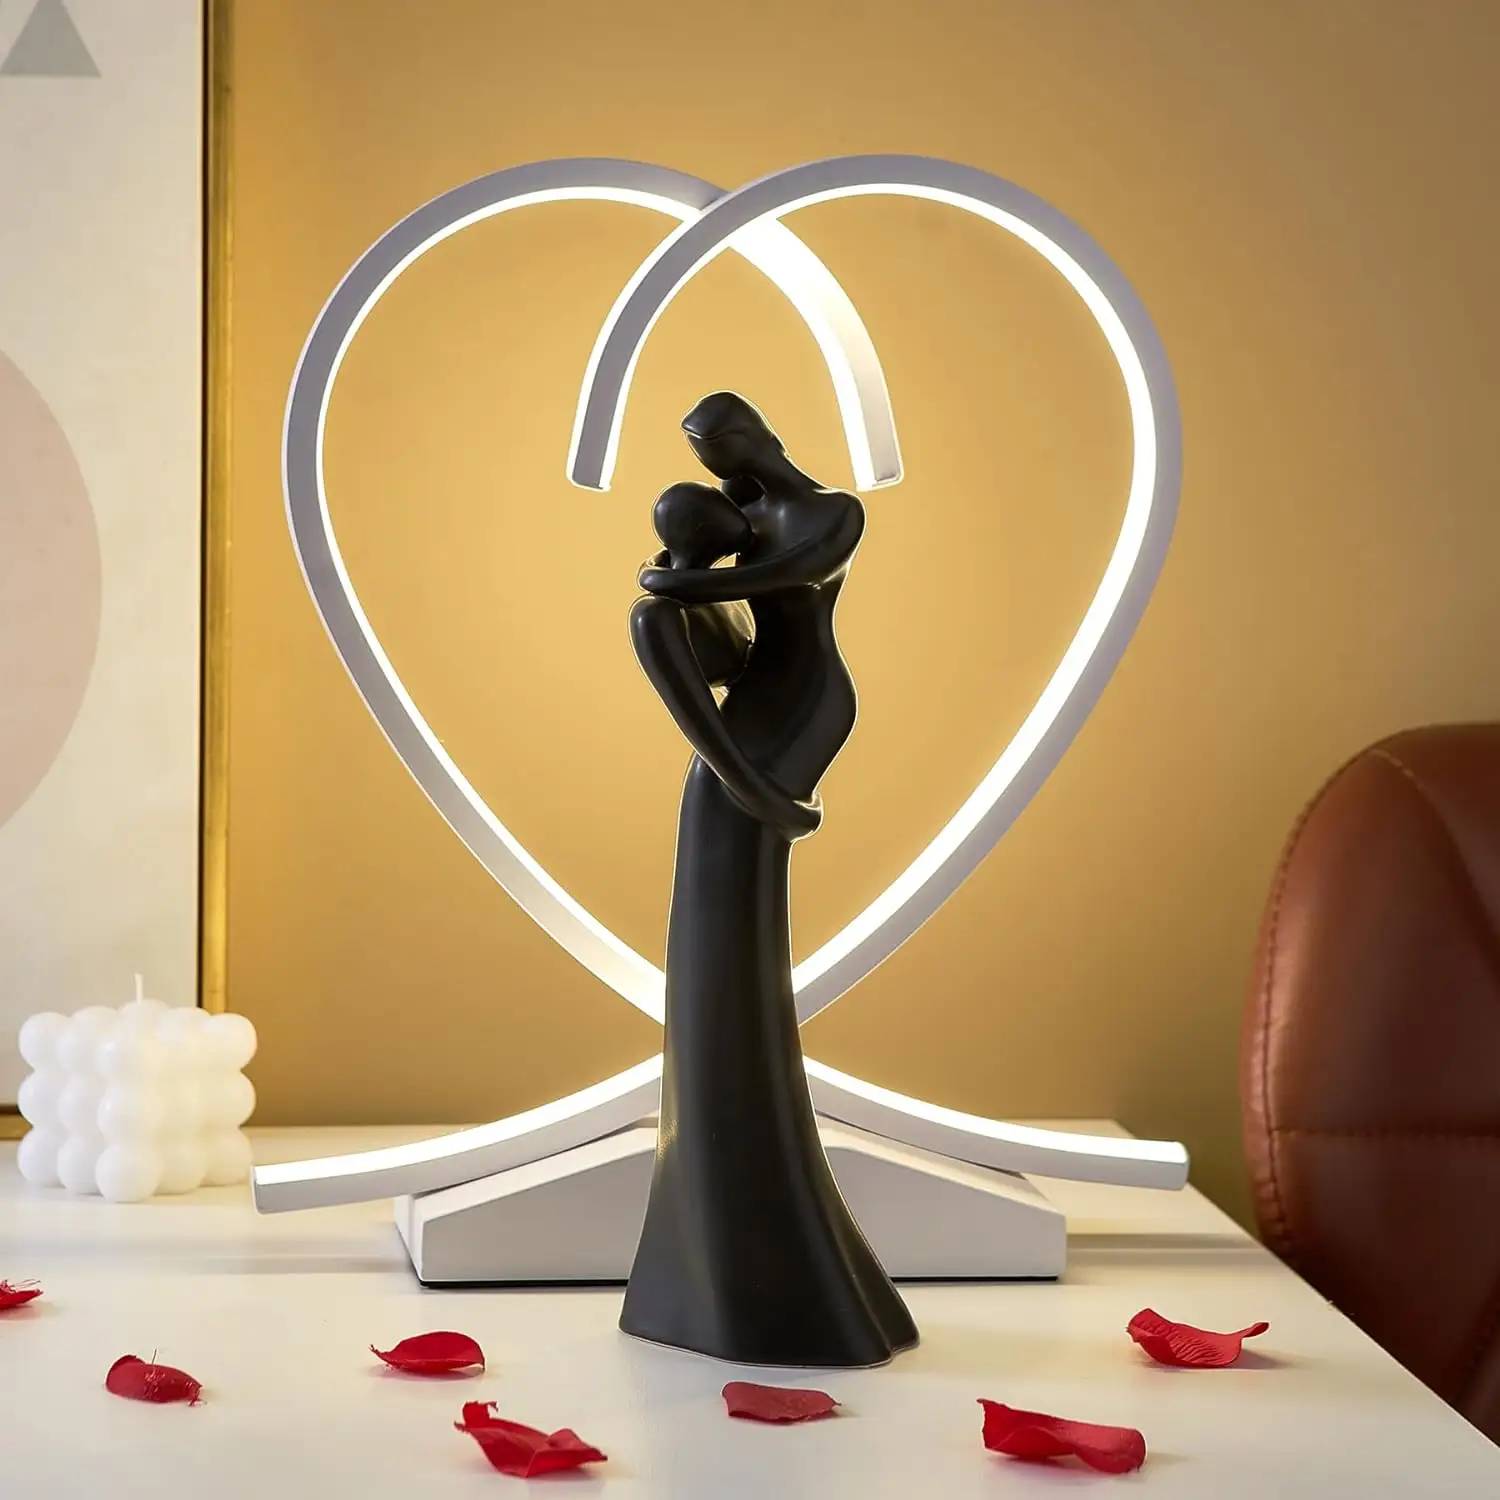 تمثال منحوت من زوجين يحتضنان بتصميم عاشق أسود لتزيين المنزل، مجموعة تماثيل في غرفة المعيشة رف كتب في غرفة النوم طاولة مطبخ، a